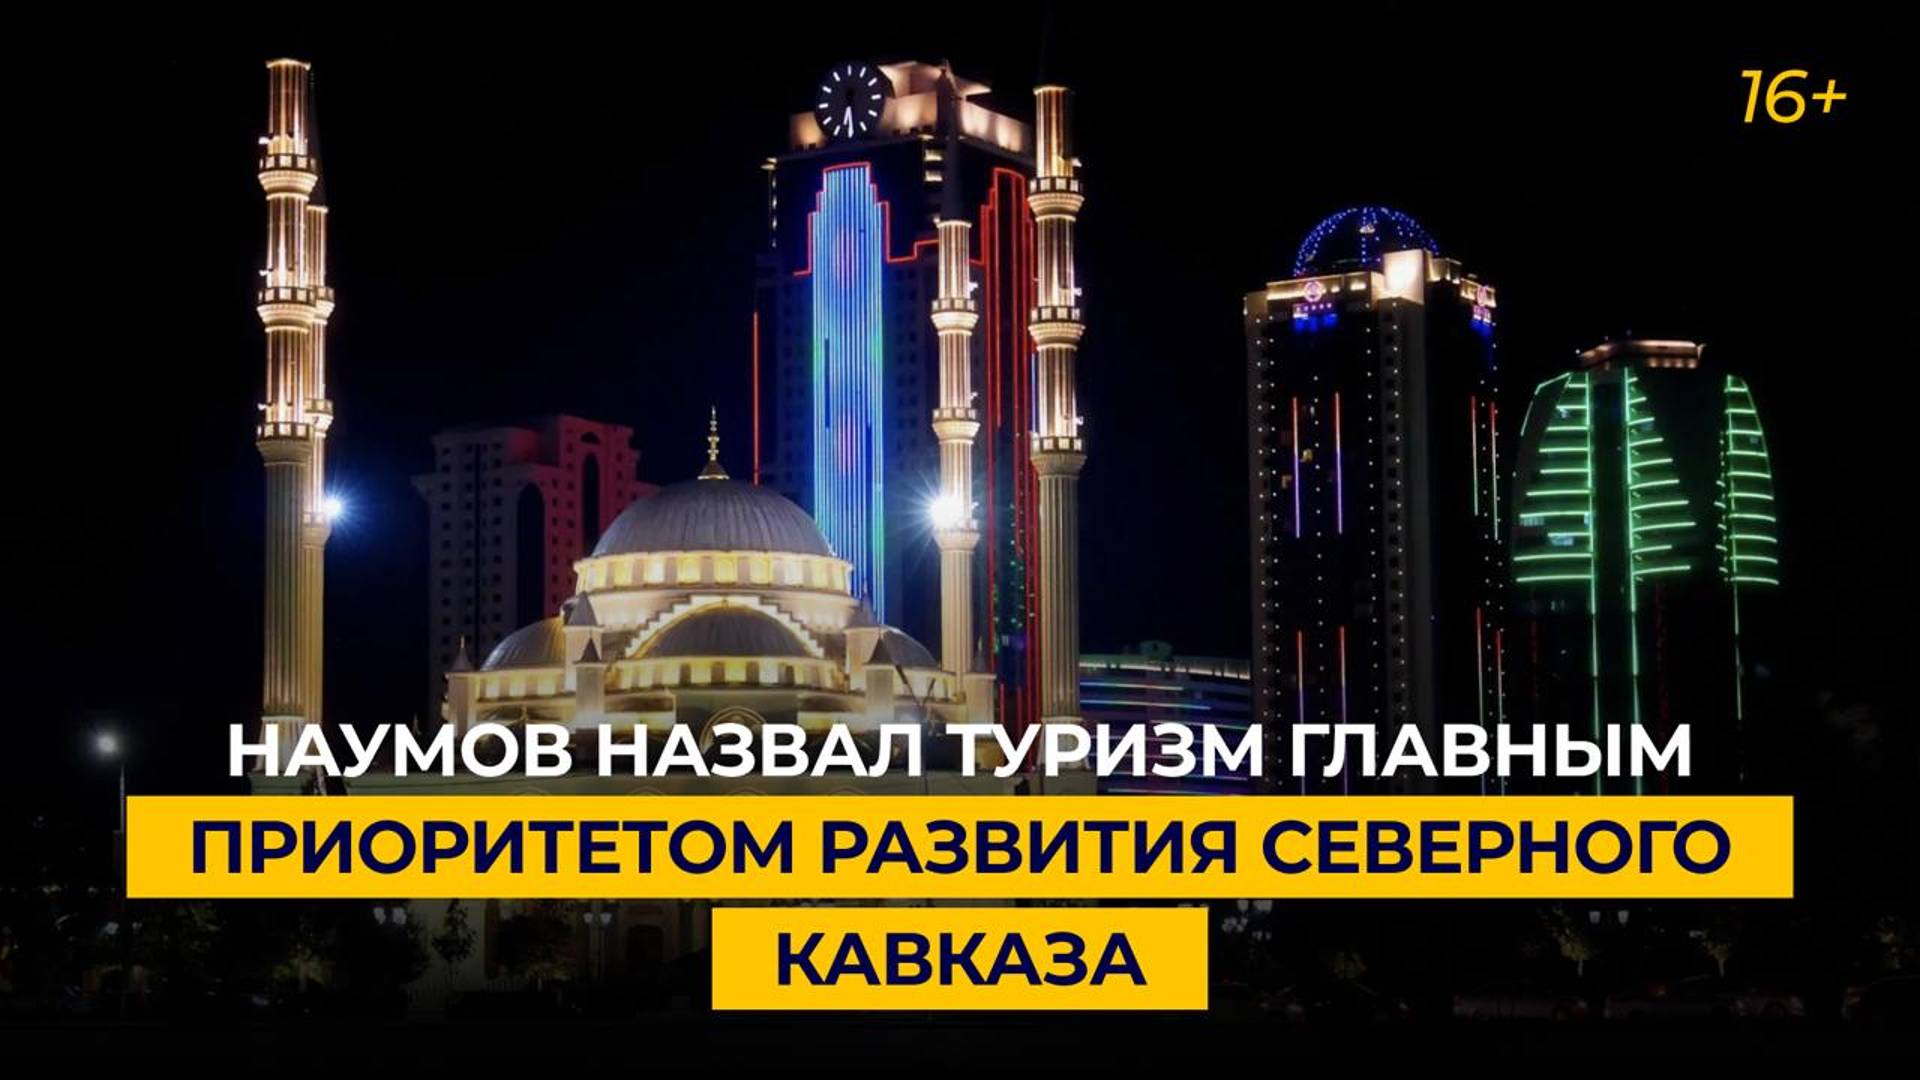 Наумов назвал туризм главным приоритетом развития Северного Кавказа